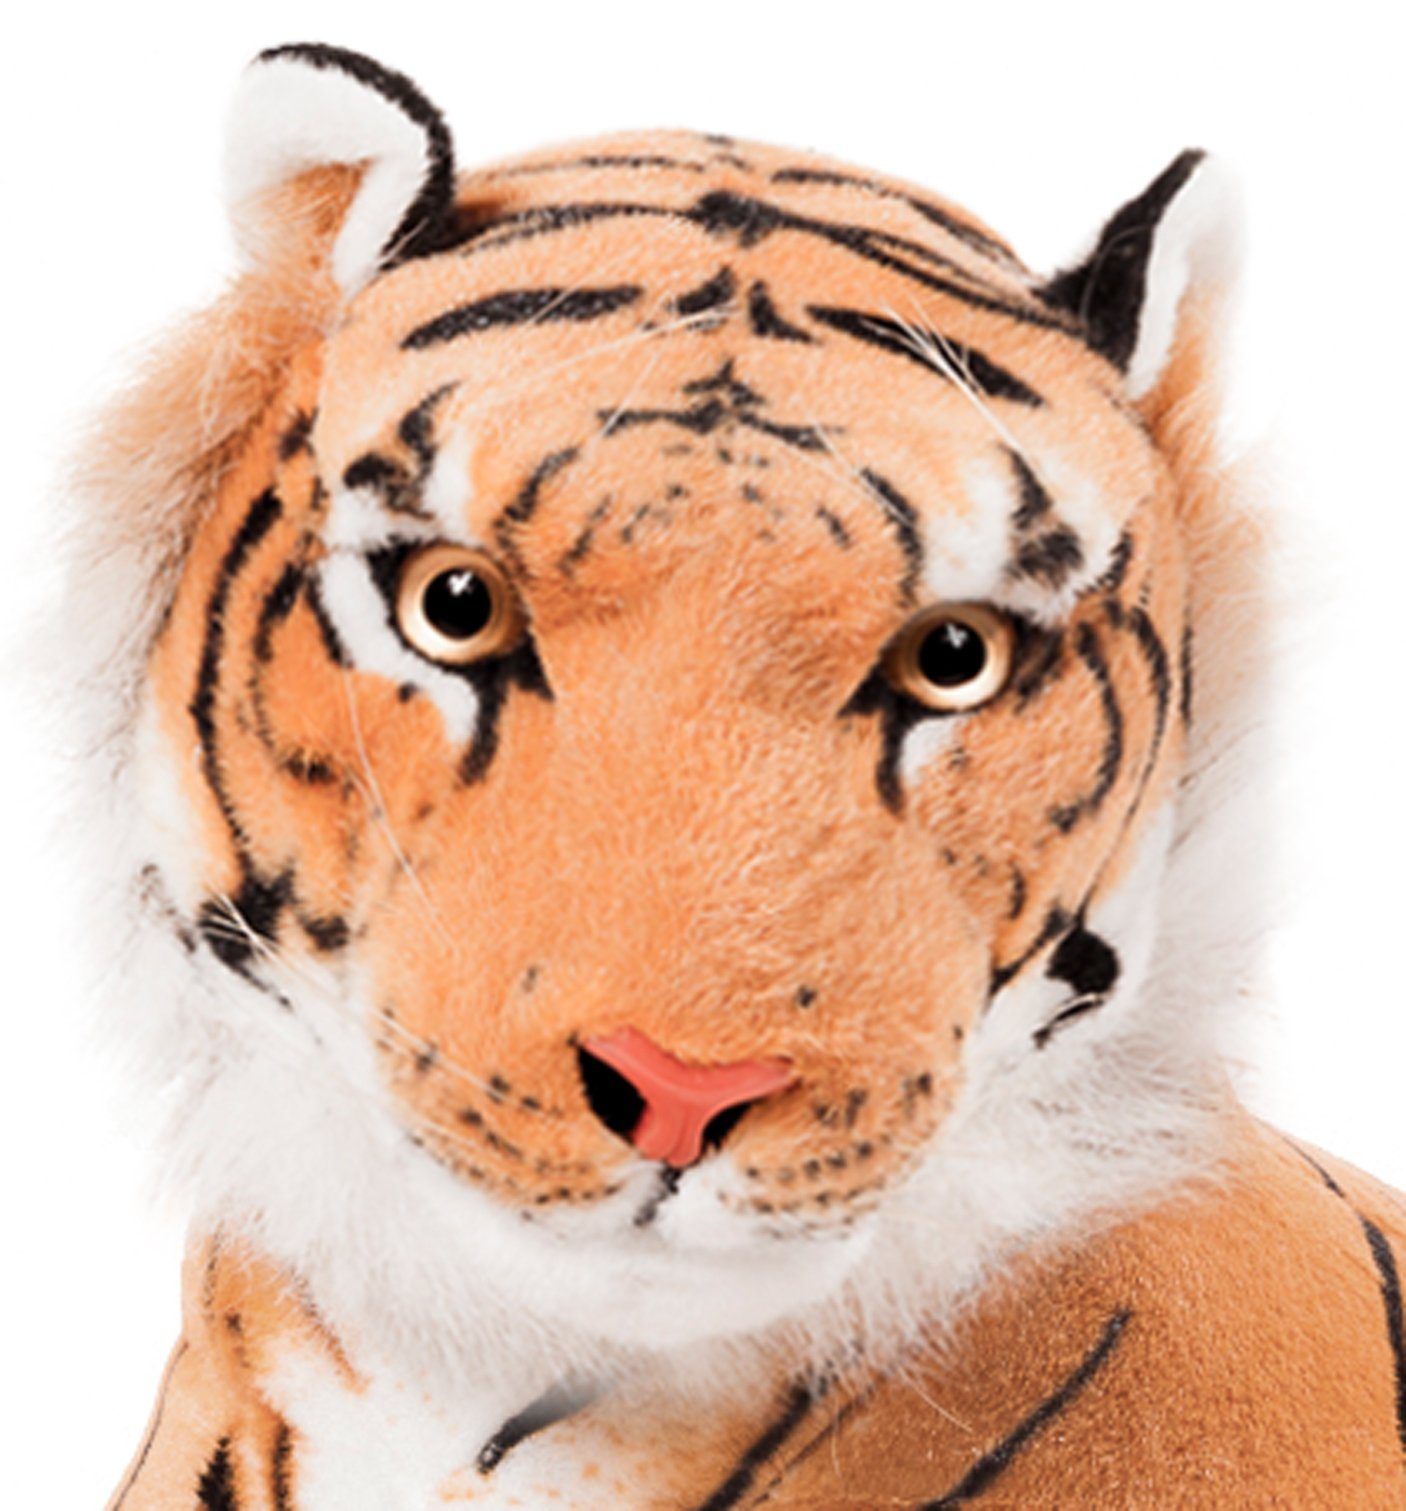 110 cm inkl Tiger liegend weiß  ca 60 cm Schwanz Plüschtier Plüschtiger 